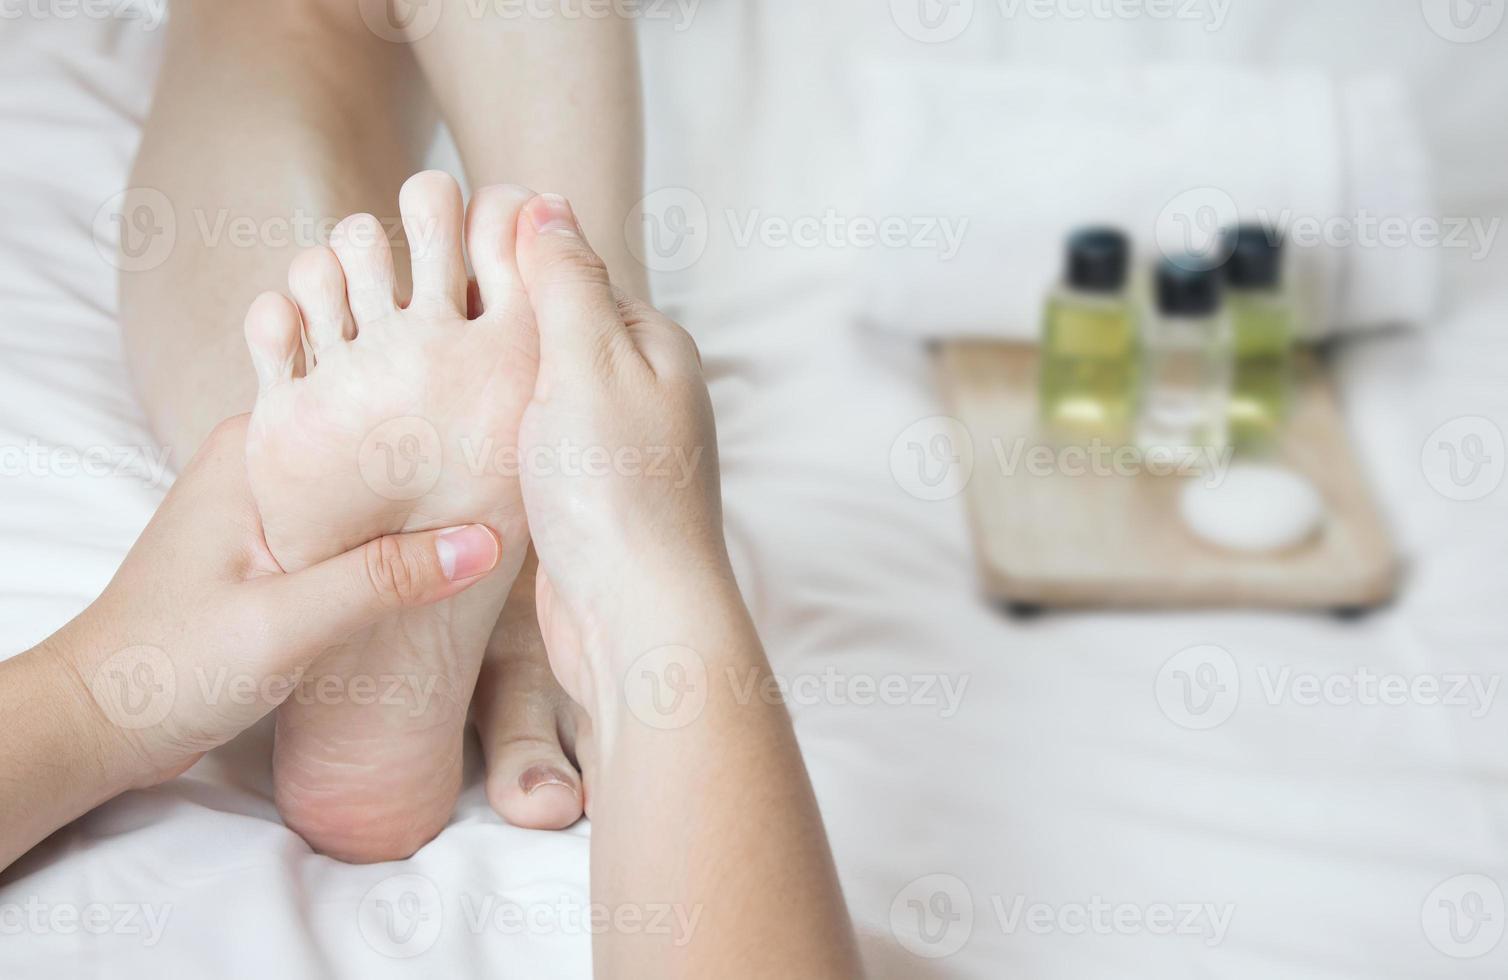 mãos de um massageador de pés profissional com óleos e produtos de saúde na cama branca. conceito de cuidados de saúde, relaxamento, tratamento de spa para os pés. ou introdução de produtos para spa de pés femininos foto